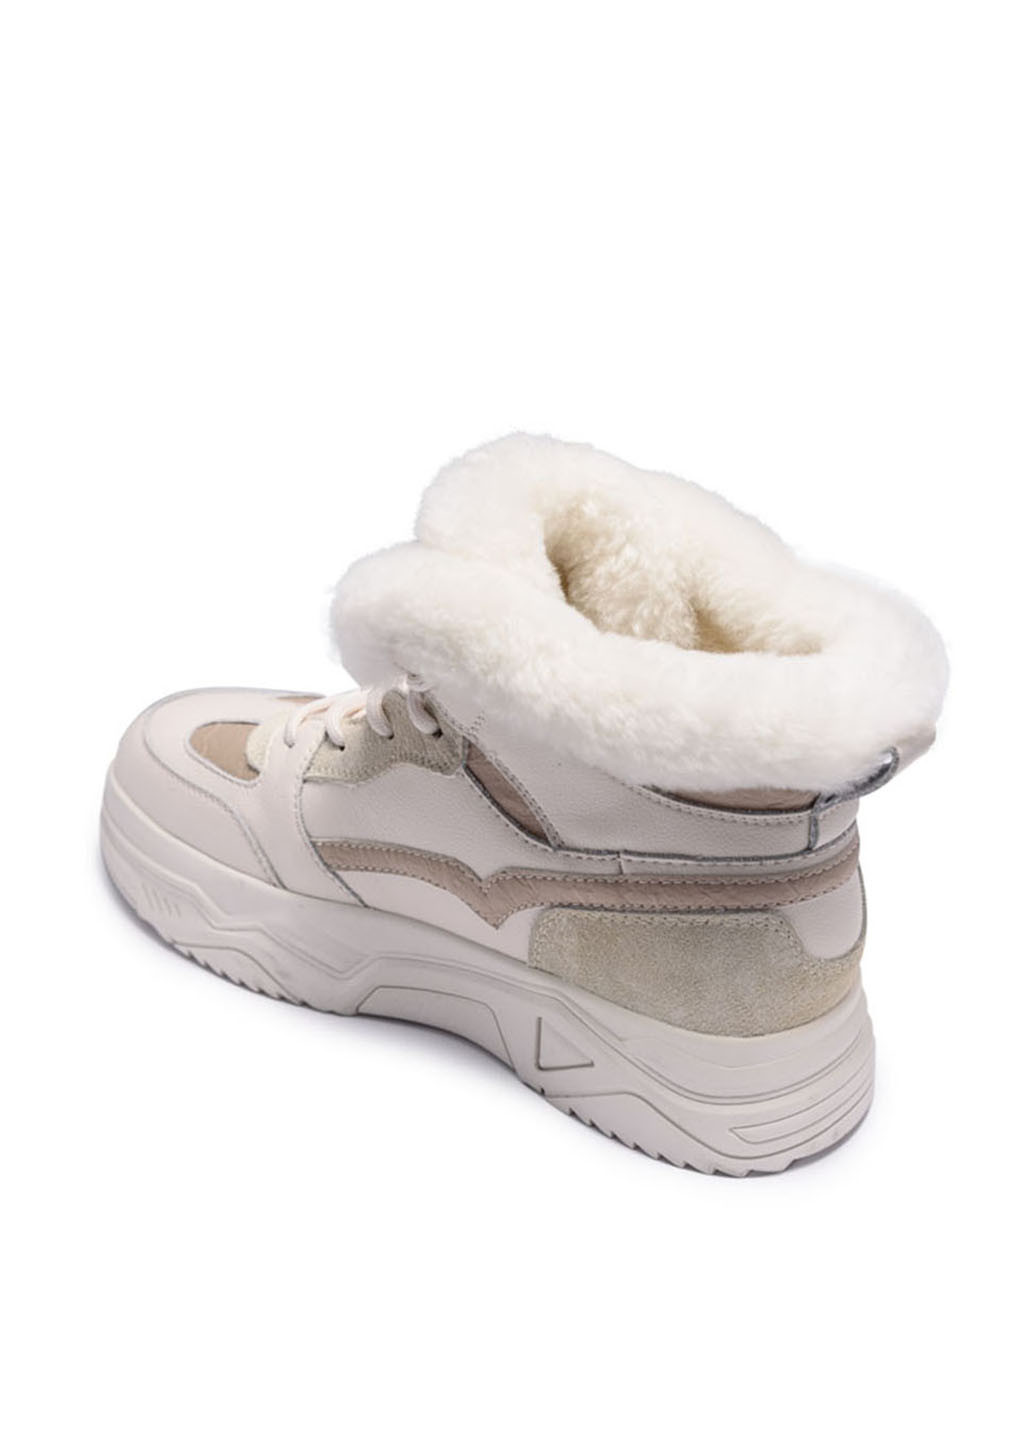 Зимние ботинки Verendina с белой подошвой